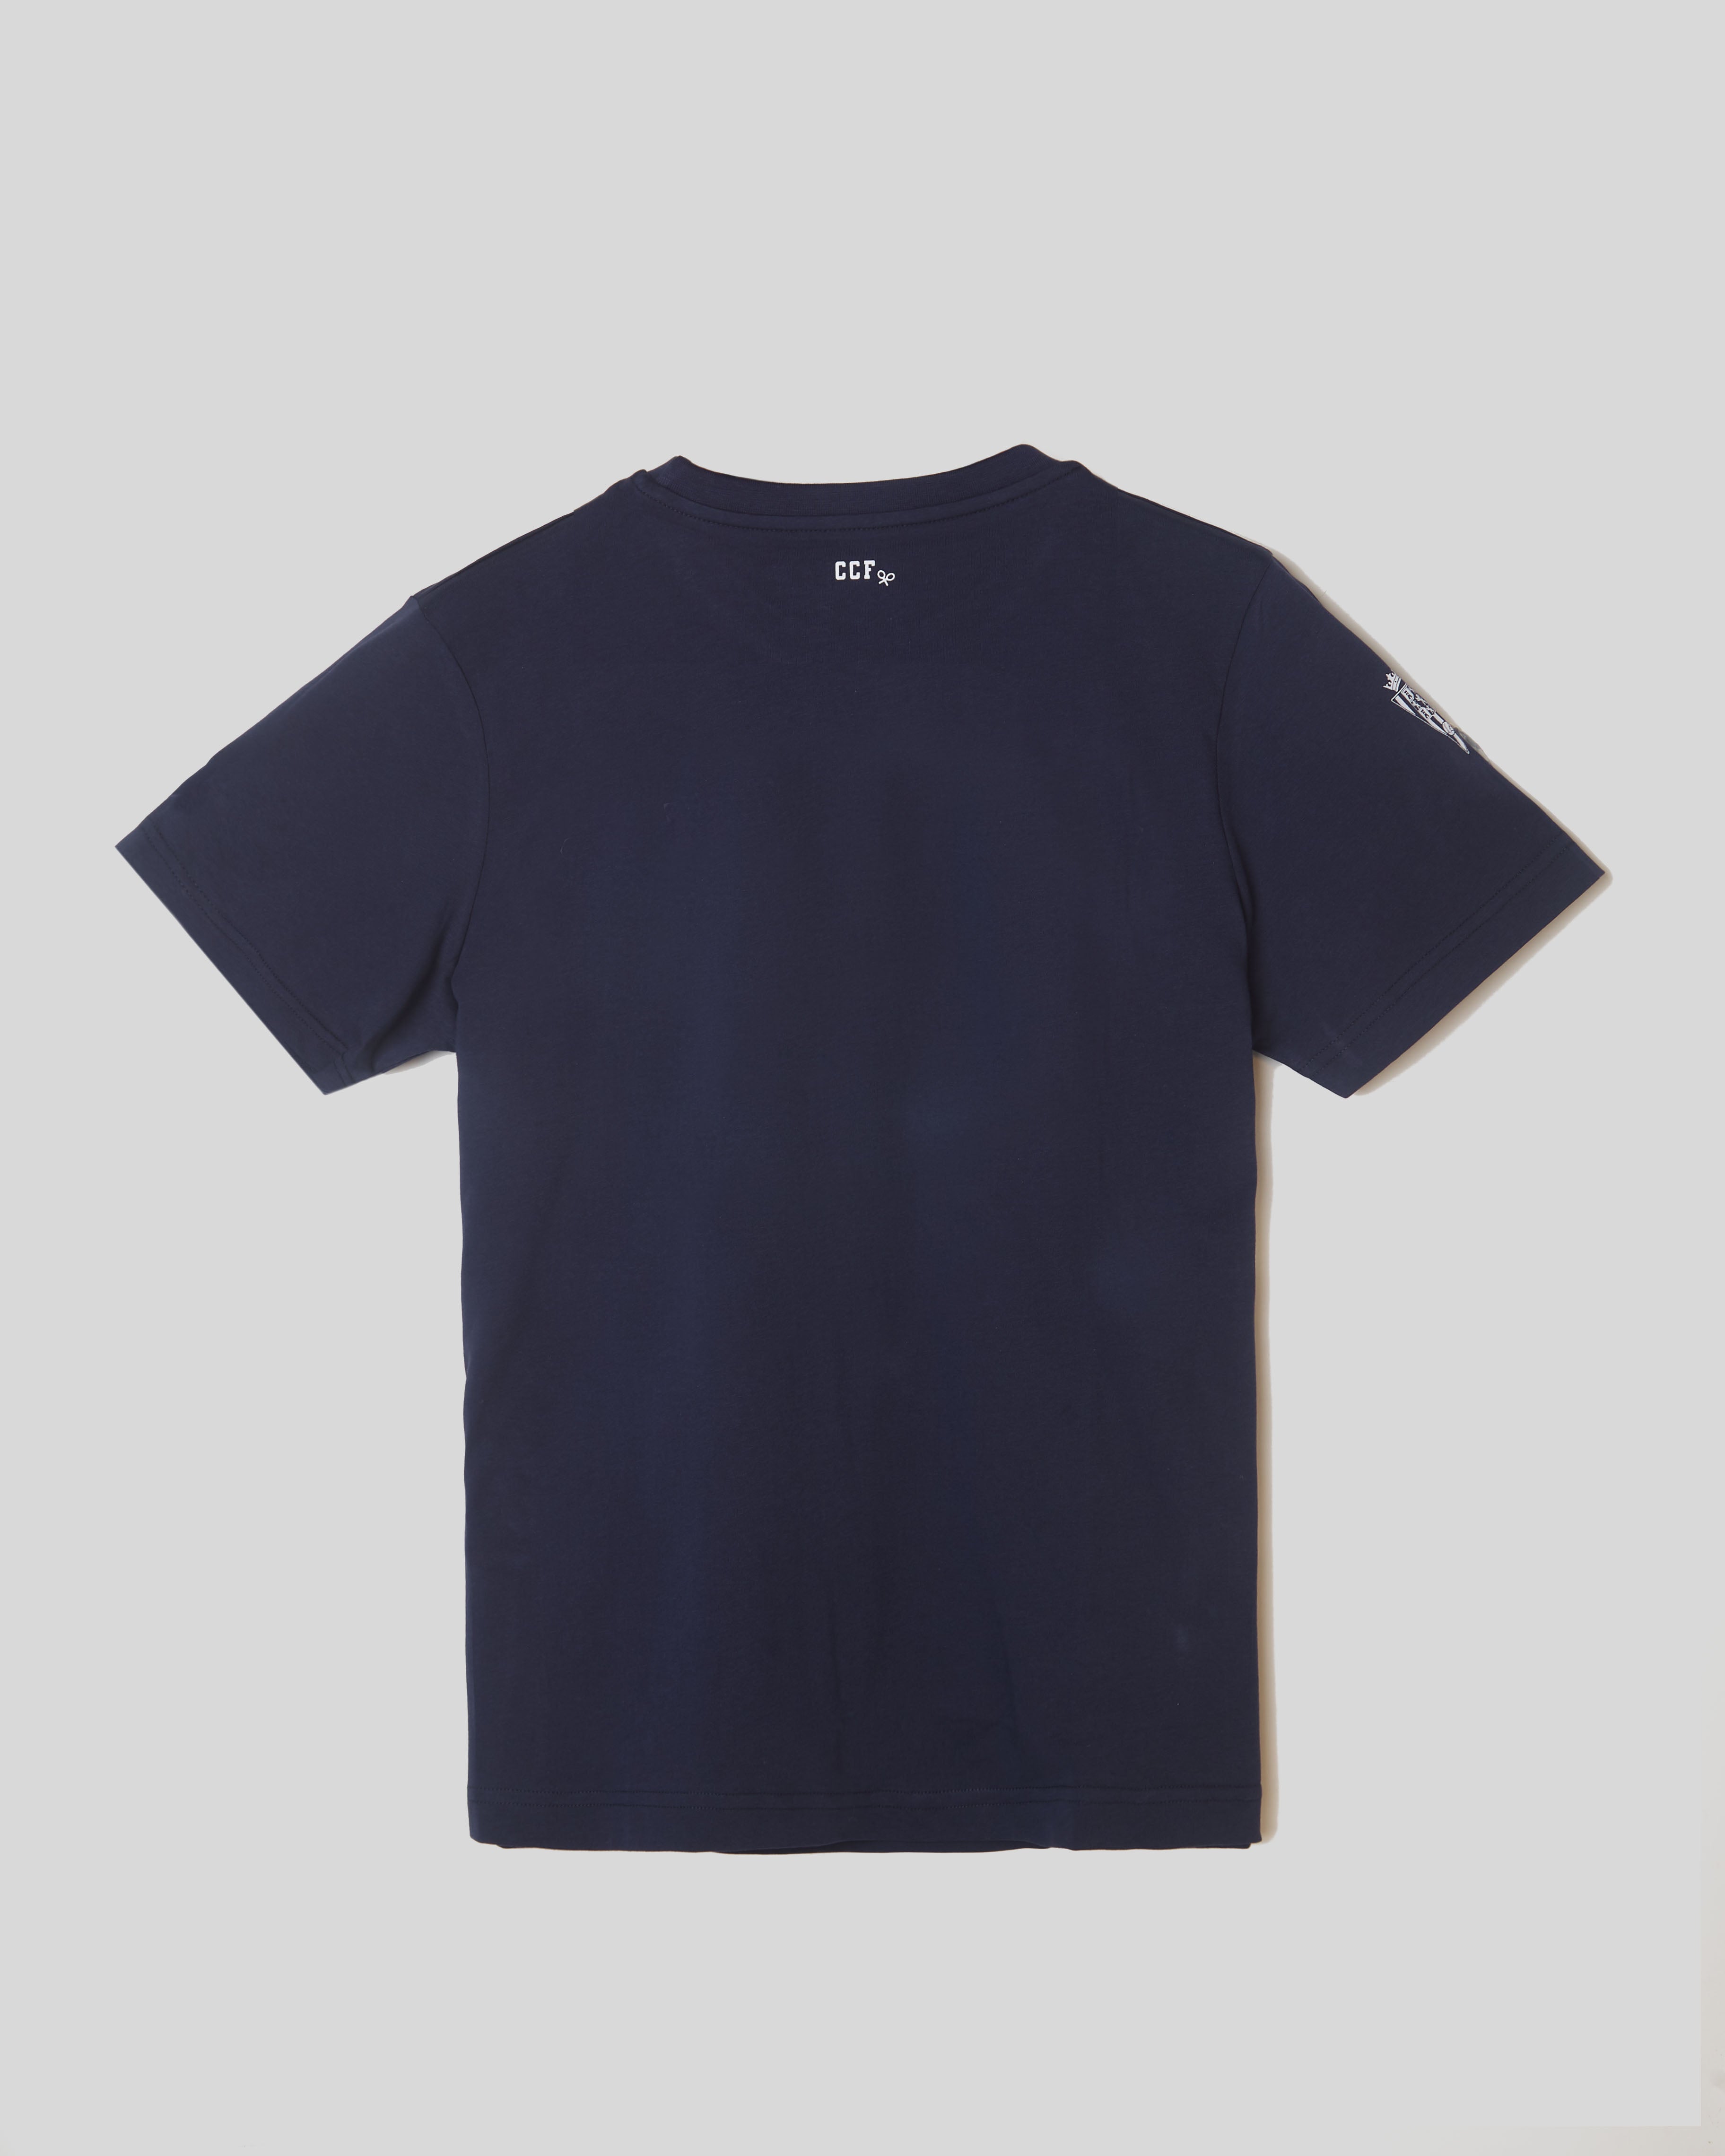 Camiseta raquetas blanquiverdes azul marino